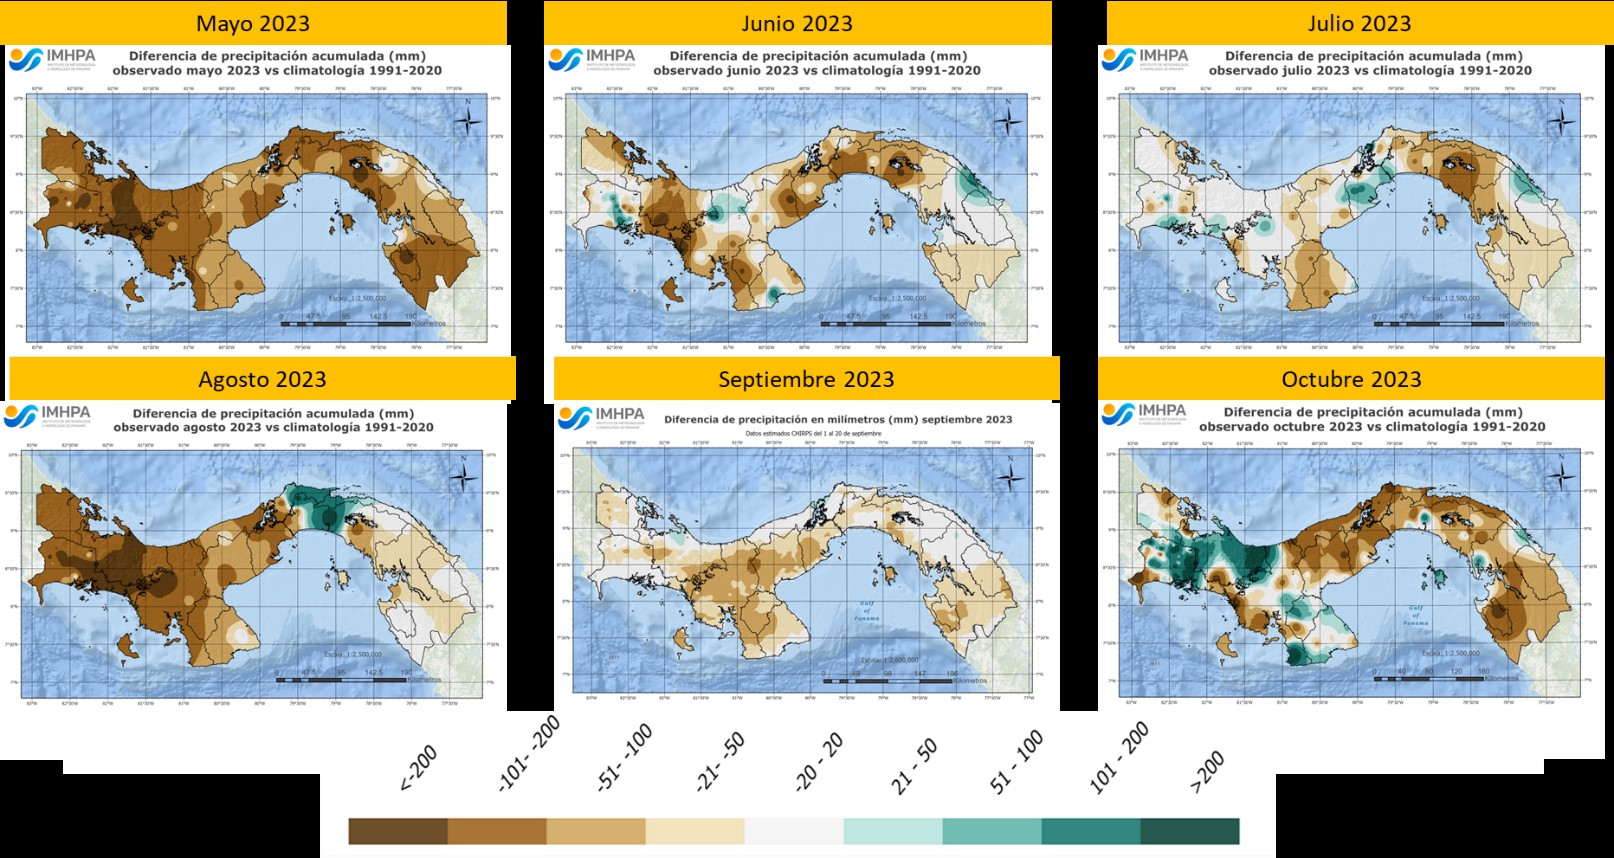  IMHPA: Fenómeno de El Niño alcanzó la intensidad fuerte